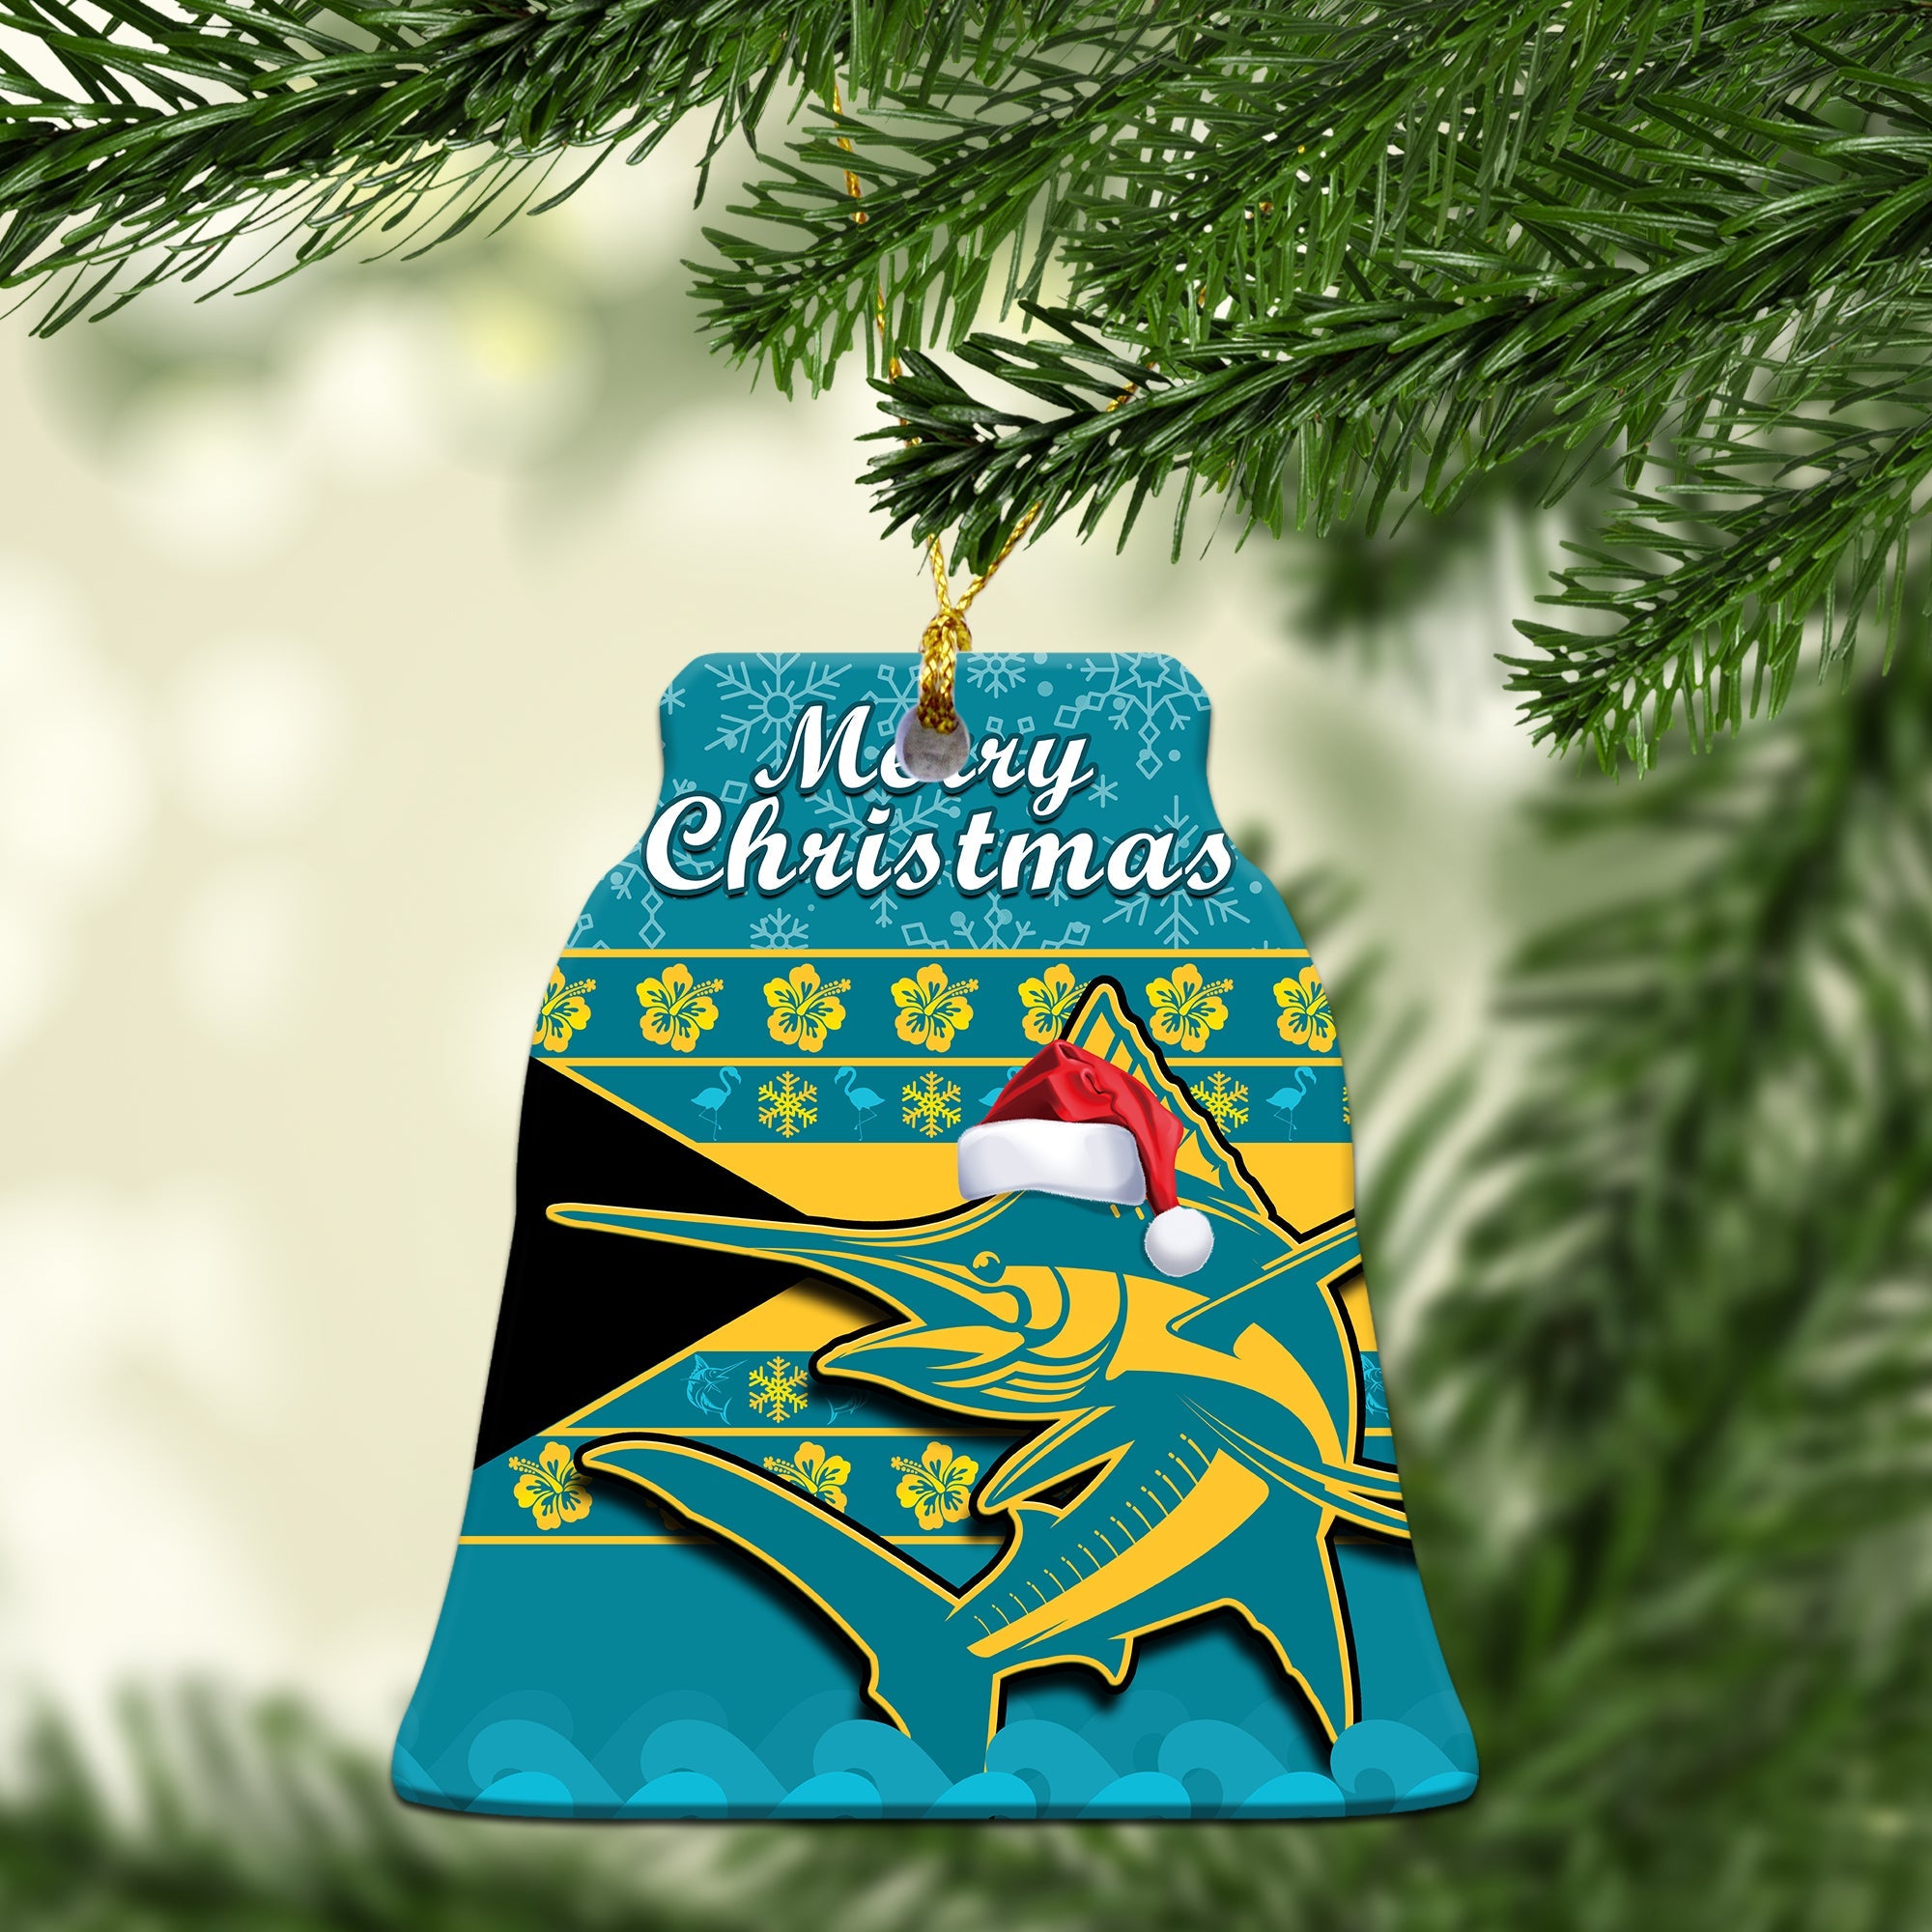 bahamas-christmas-ornaments-bahamian-blue-marlin-merry-chirstmas